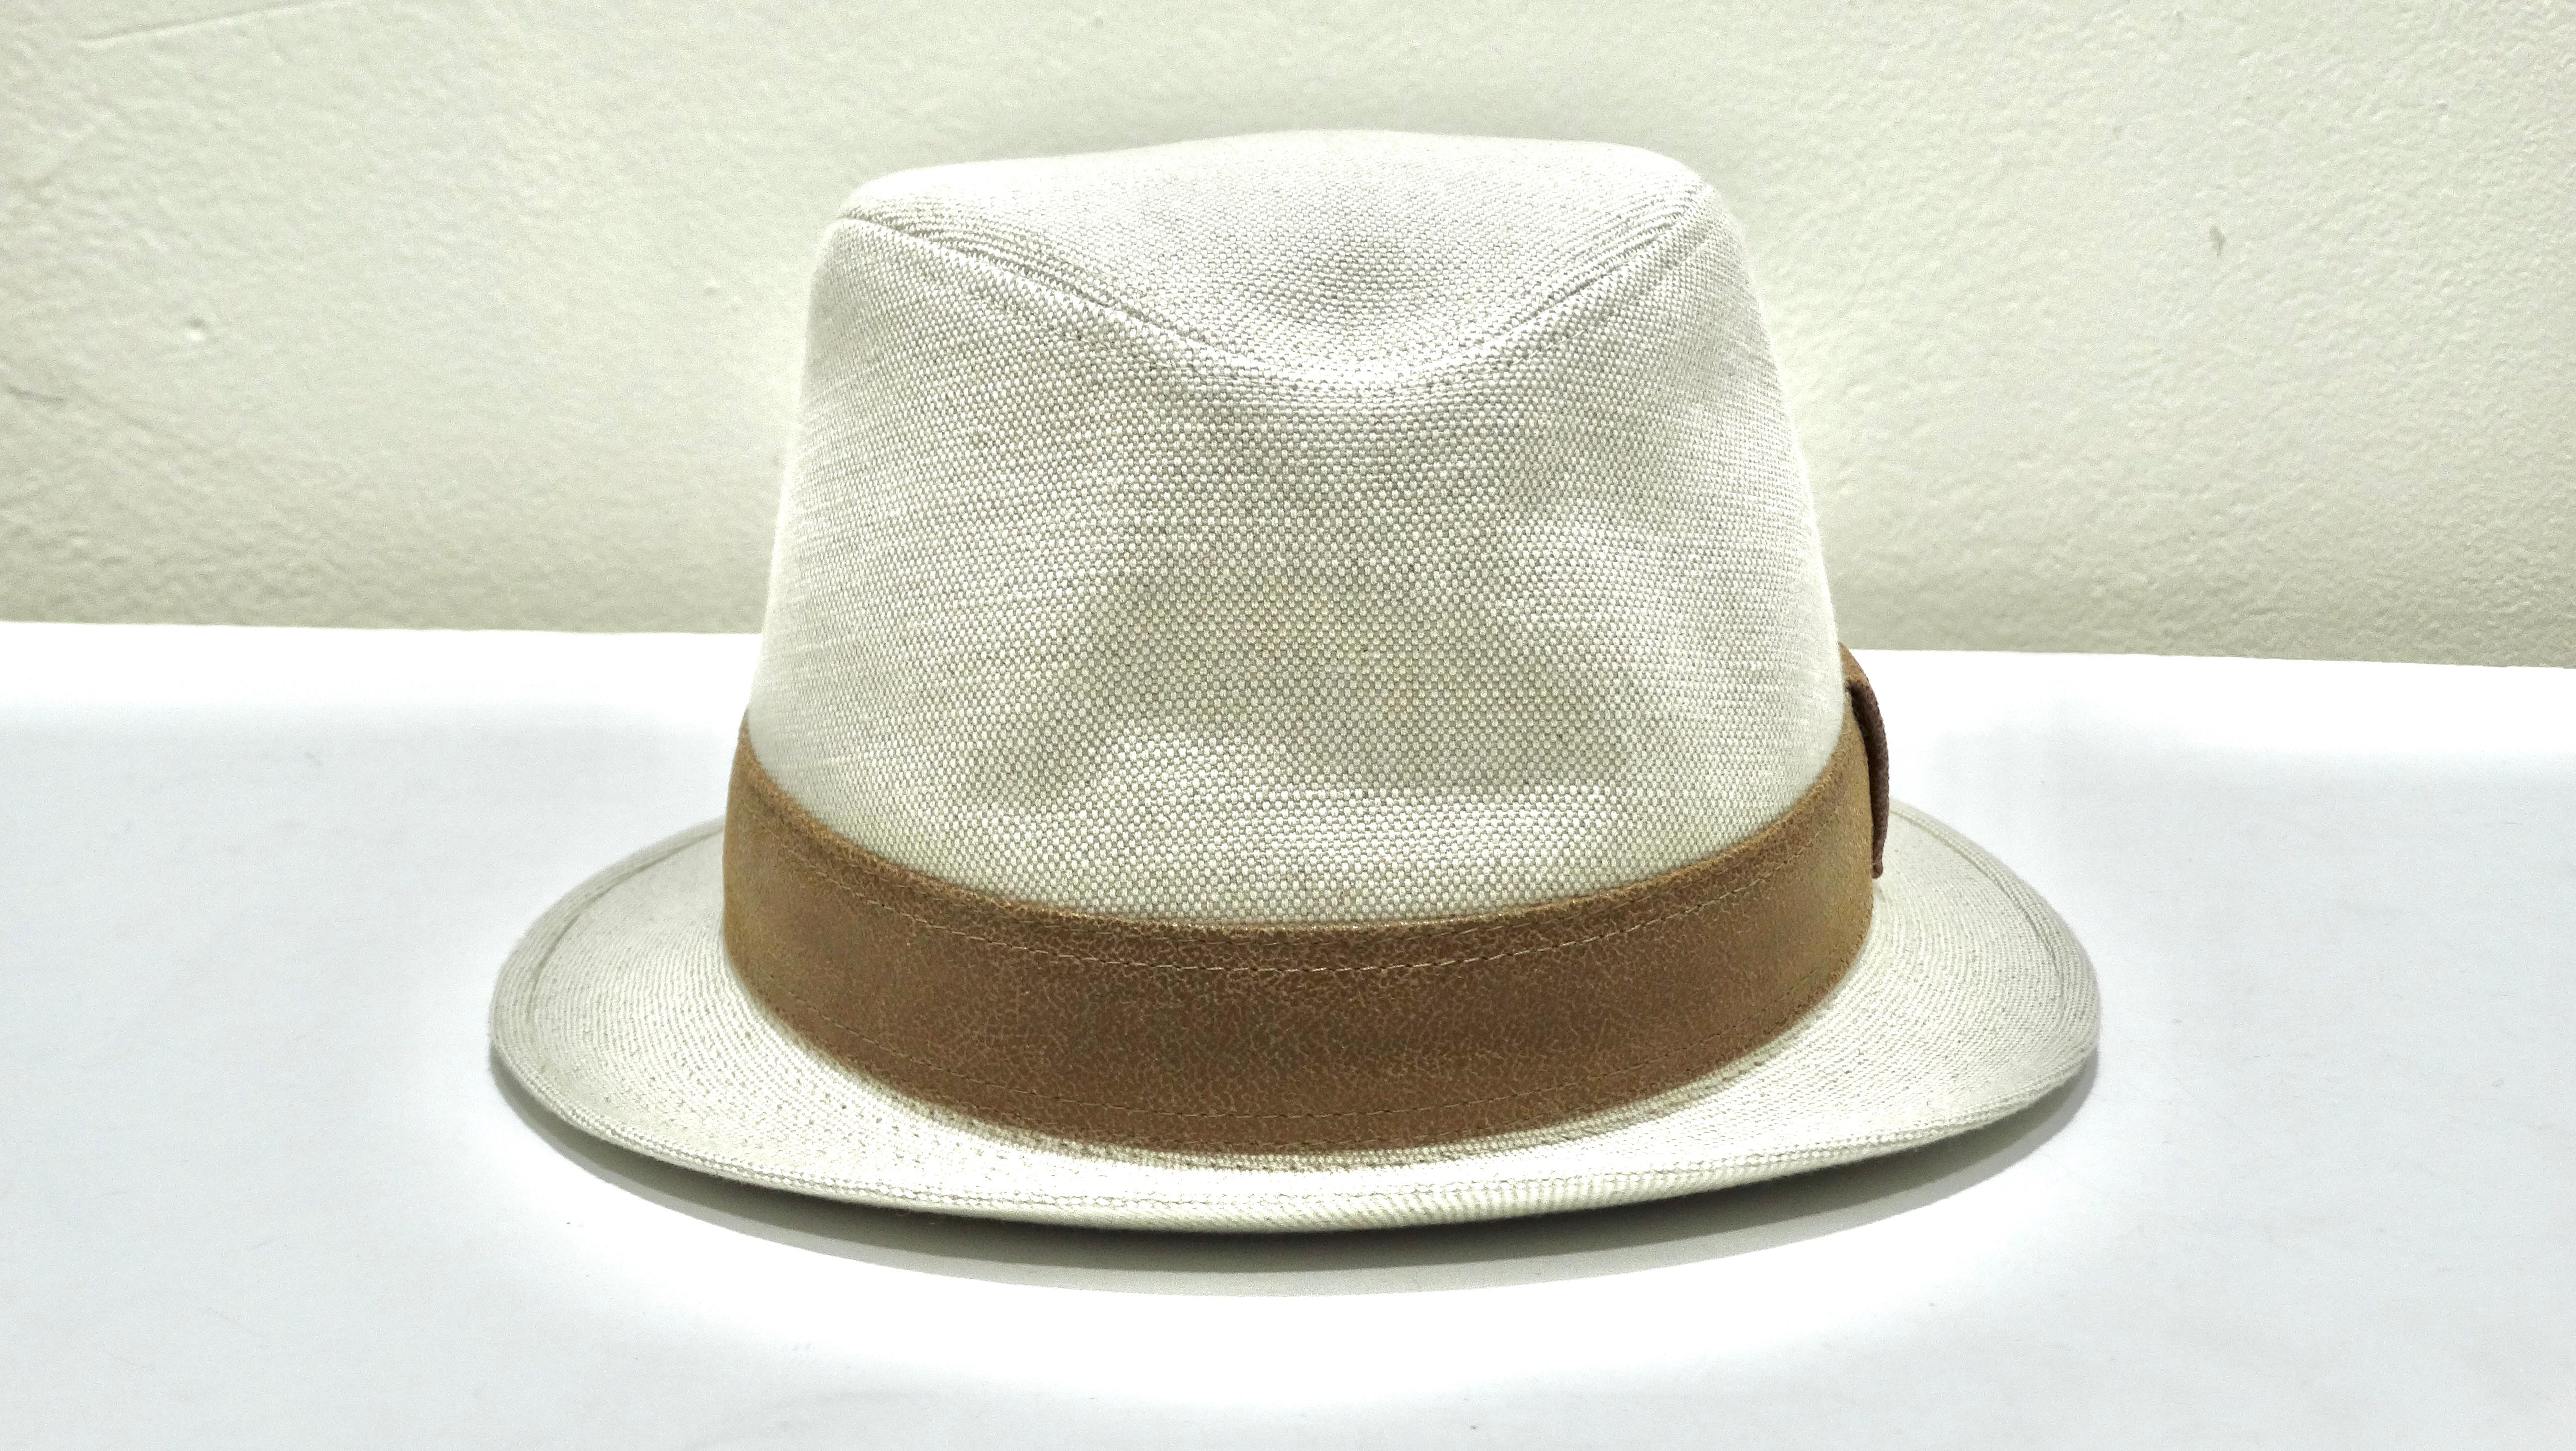 Dieser cremeweiße Hermes-Hut mit klassischem braunem Band ist ein schlichter und stilvoller Look, der Klasse zeigt. Dieser Hut bringt sowohl weibliche als auch männliche Untertöne zur Geltung und kann von jedem Geschlecht getragen werden. Der Hut